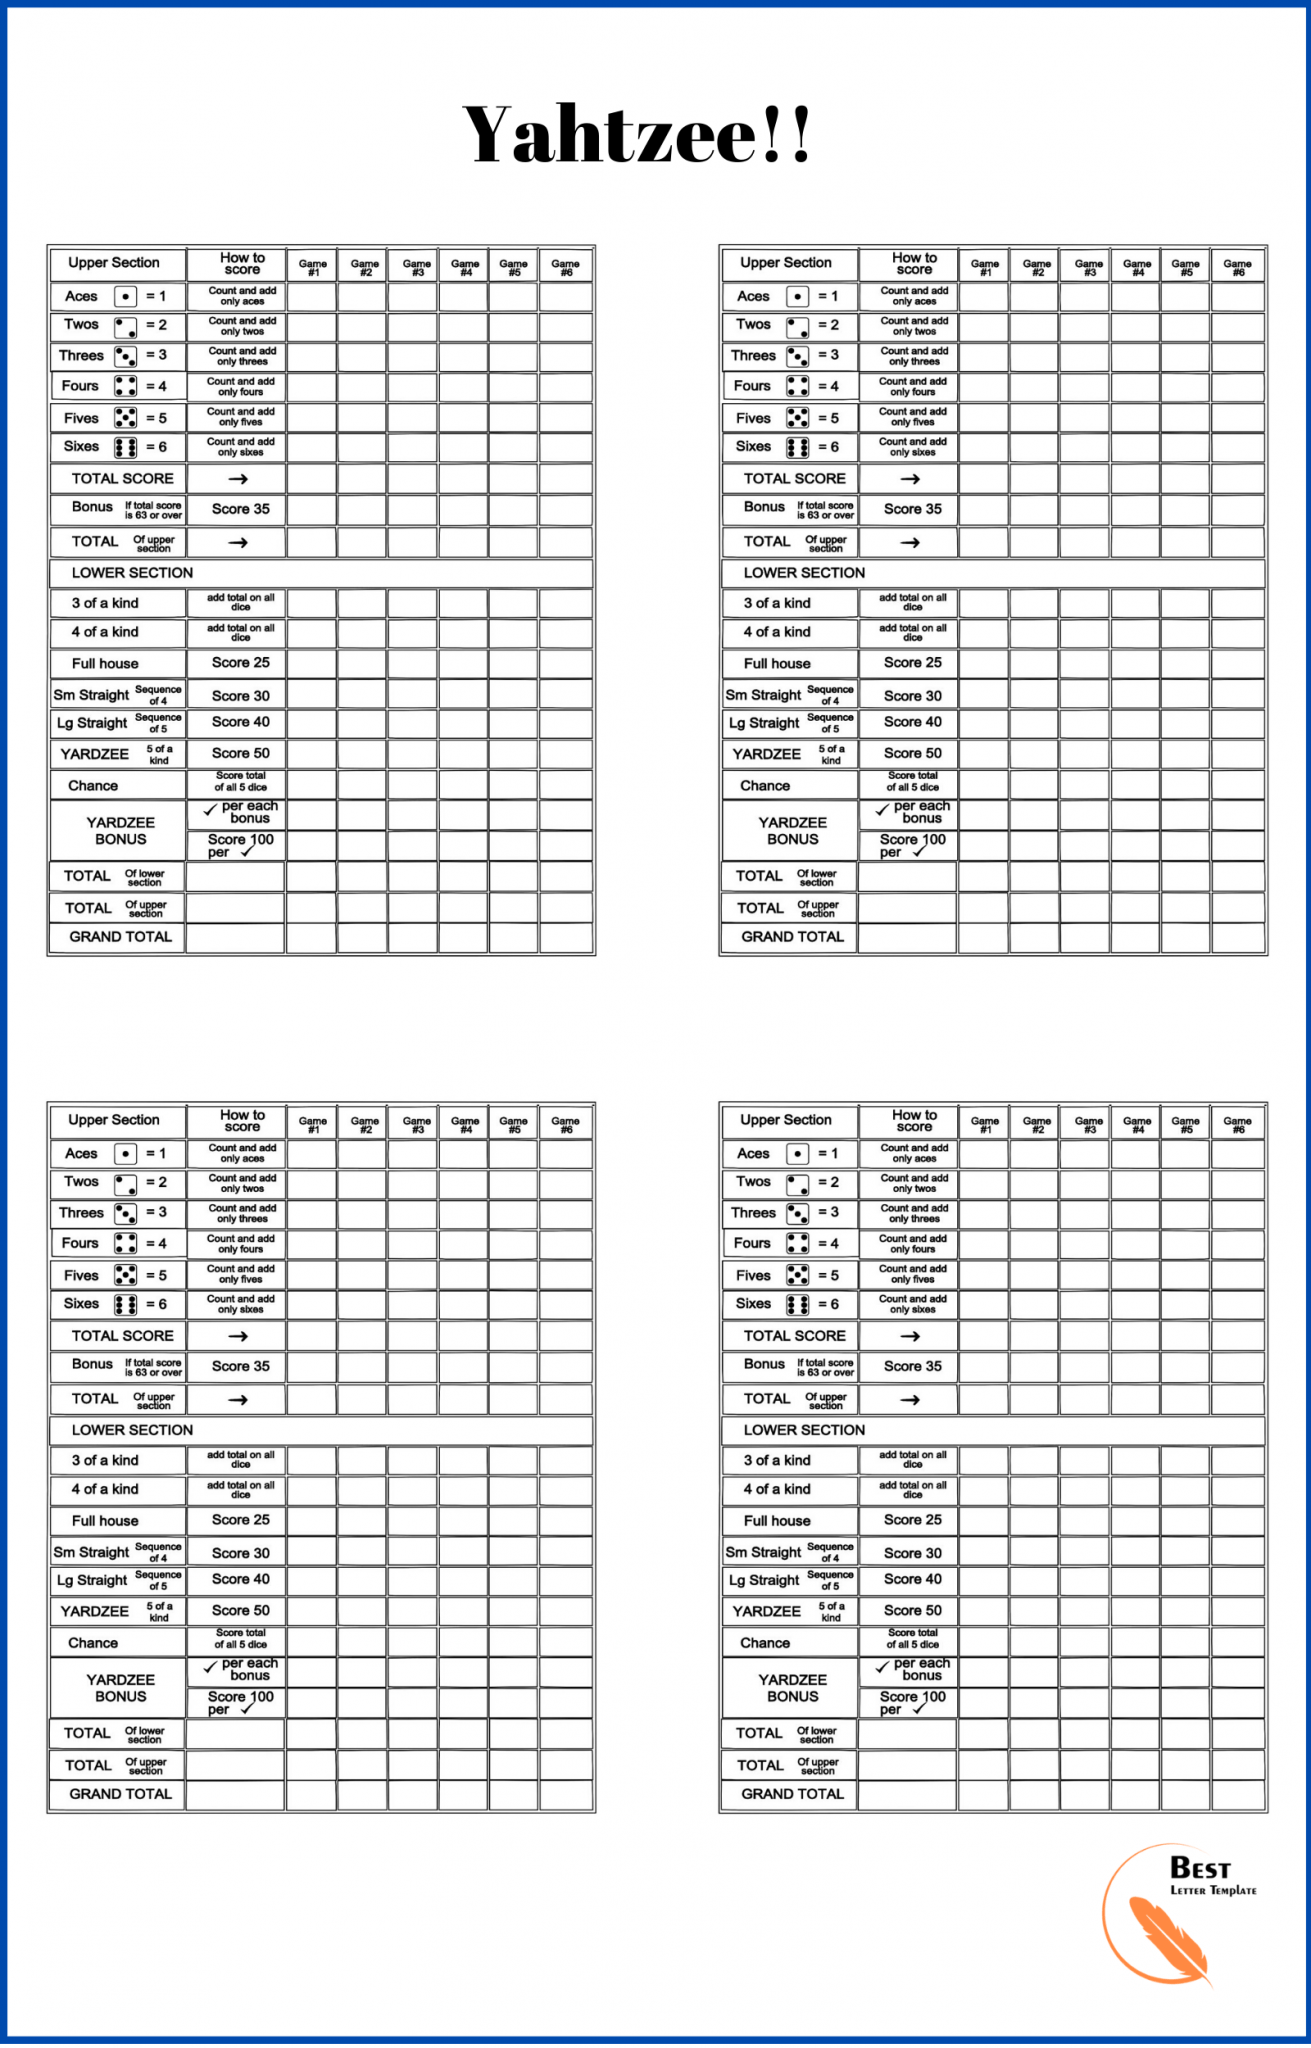 Free Printable Yahtzee Score Sheets 4 Per Page